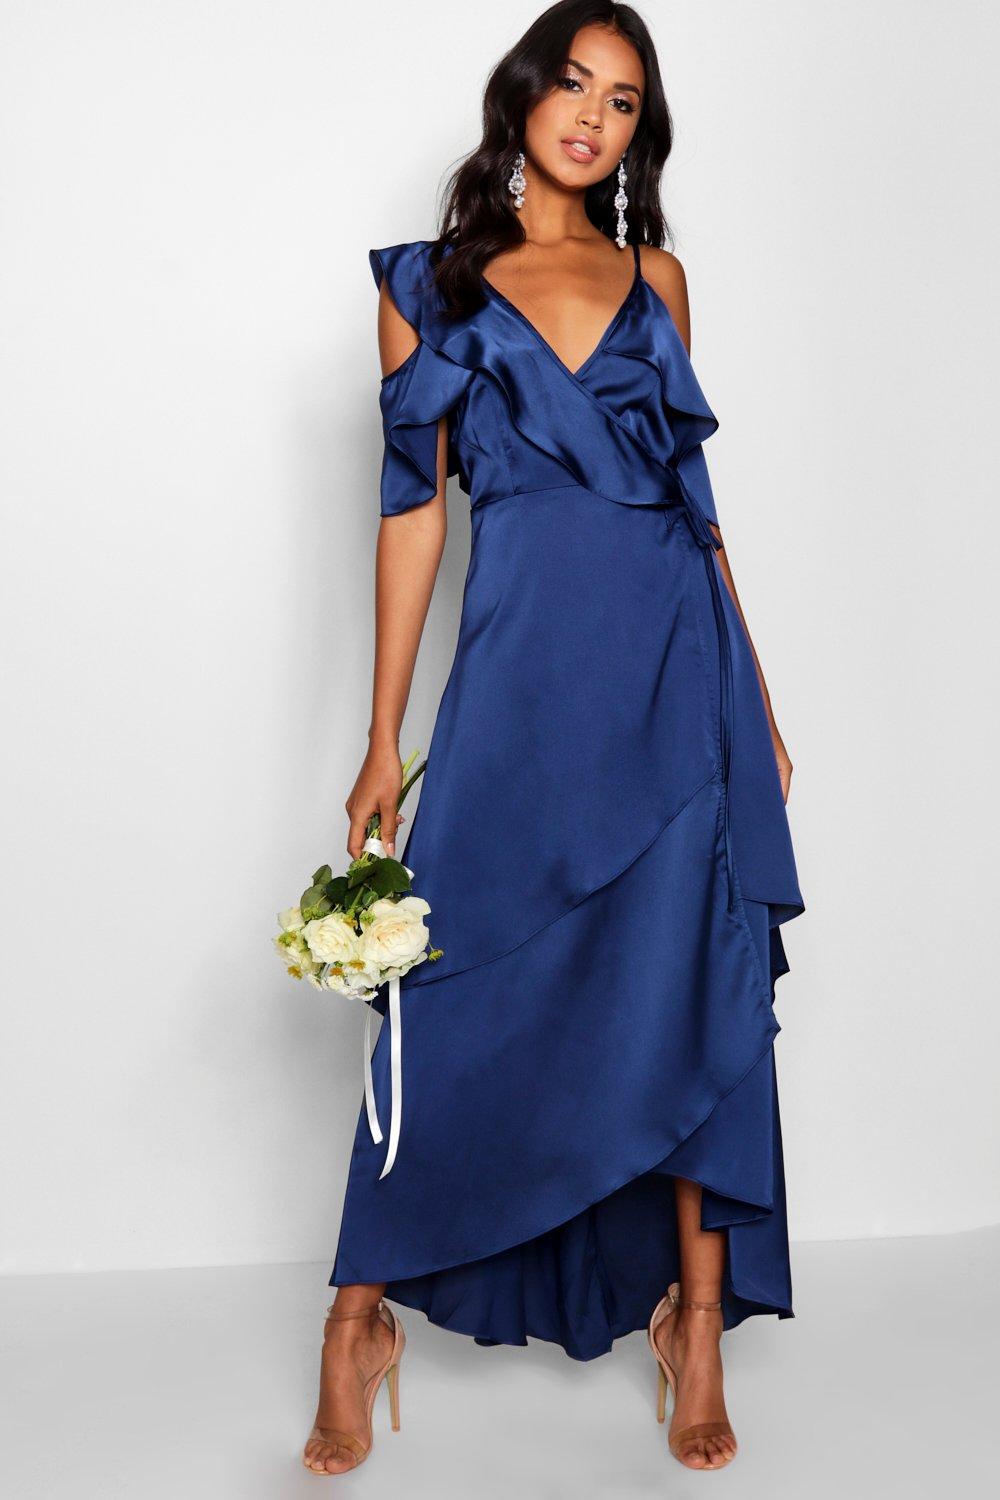 Boohoo Blue Satin Dress Factory Sale, UP TO 62% OFF |  www.turismevallgorguina.com